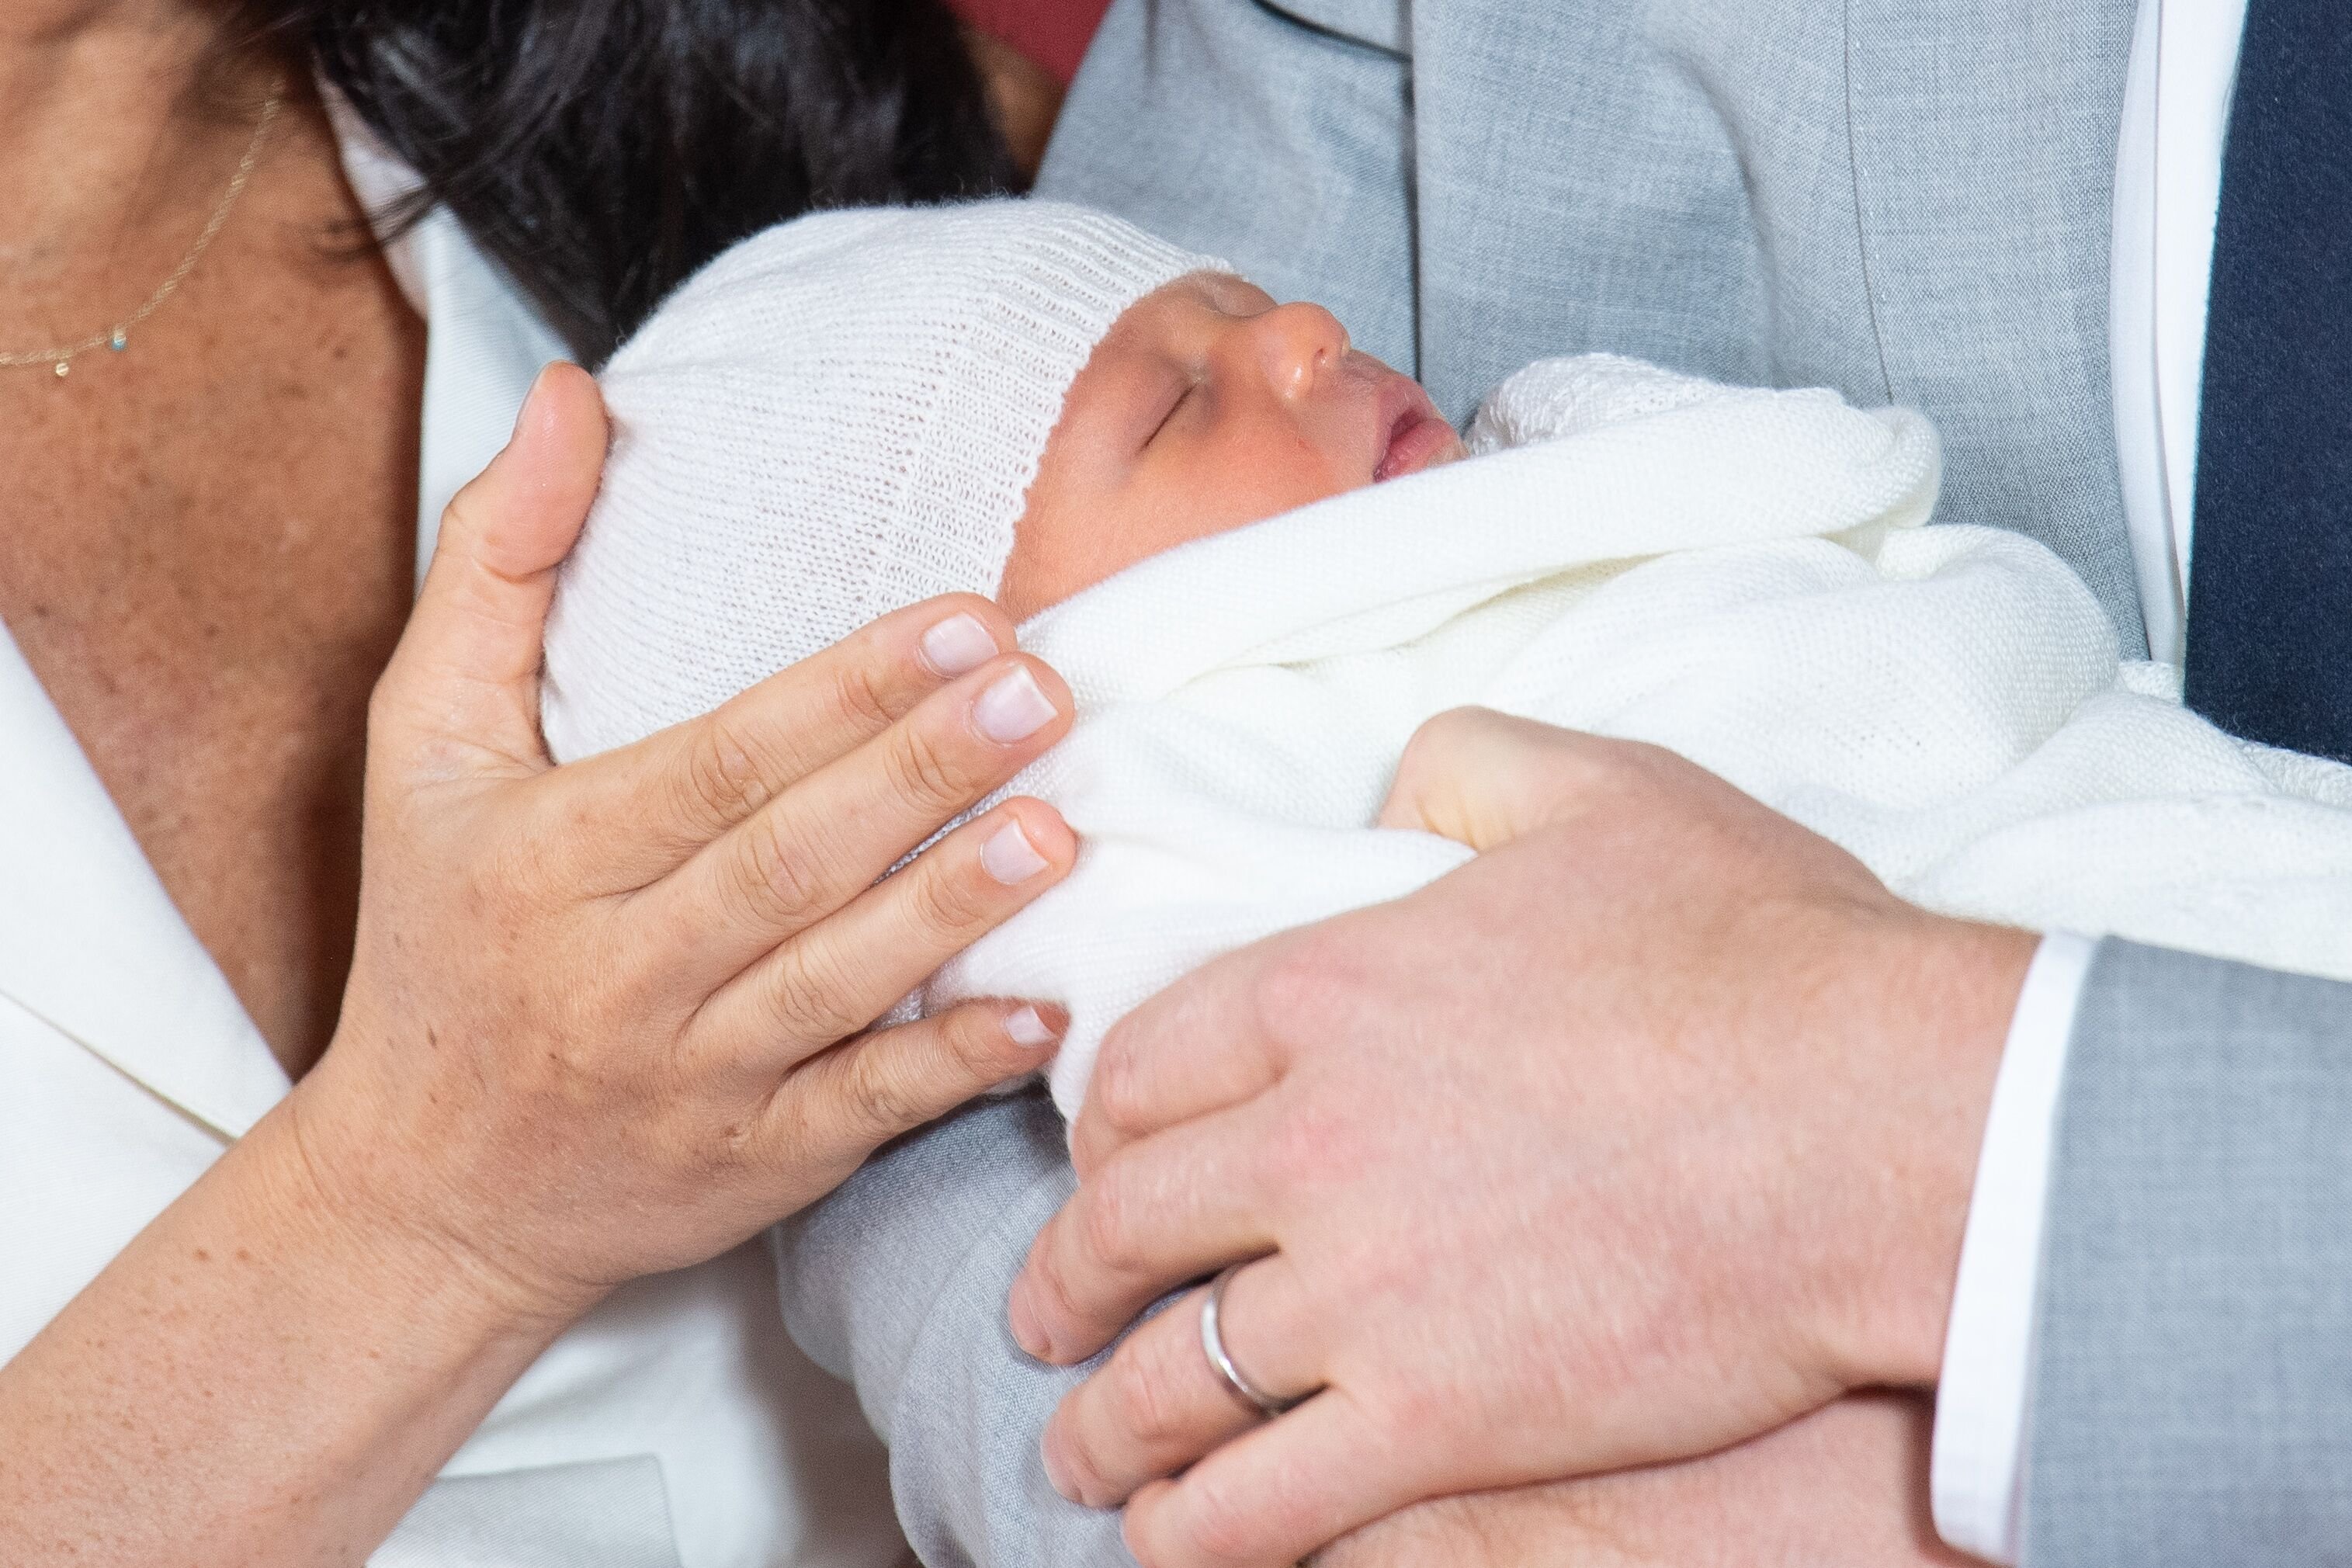 Meghan Markle, le Prince Harry, et leur fils lors de sa première apparition publique | Source : Getty Images